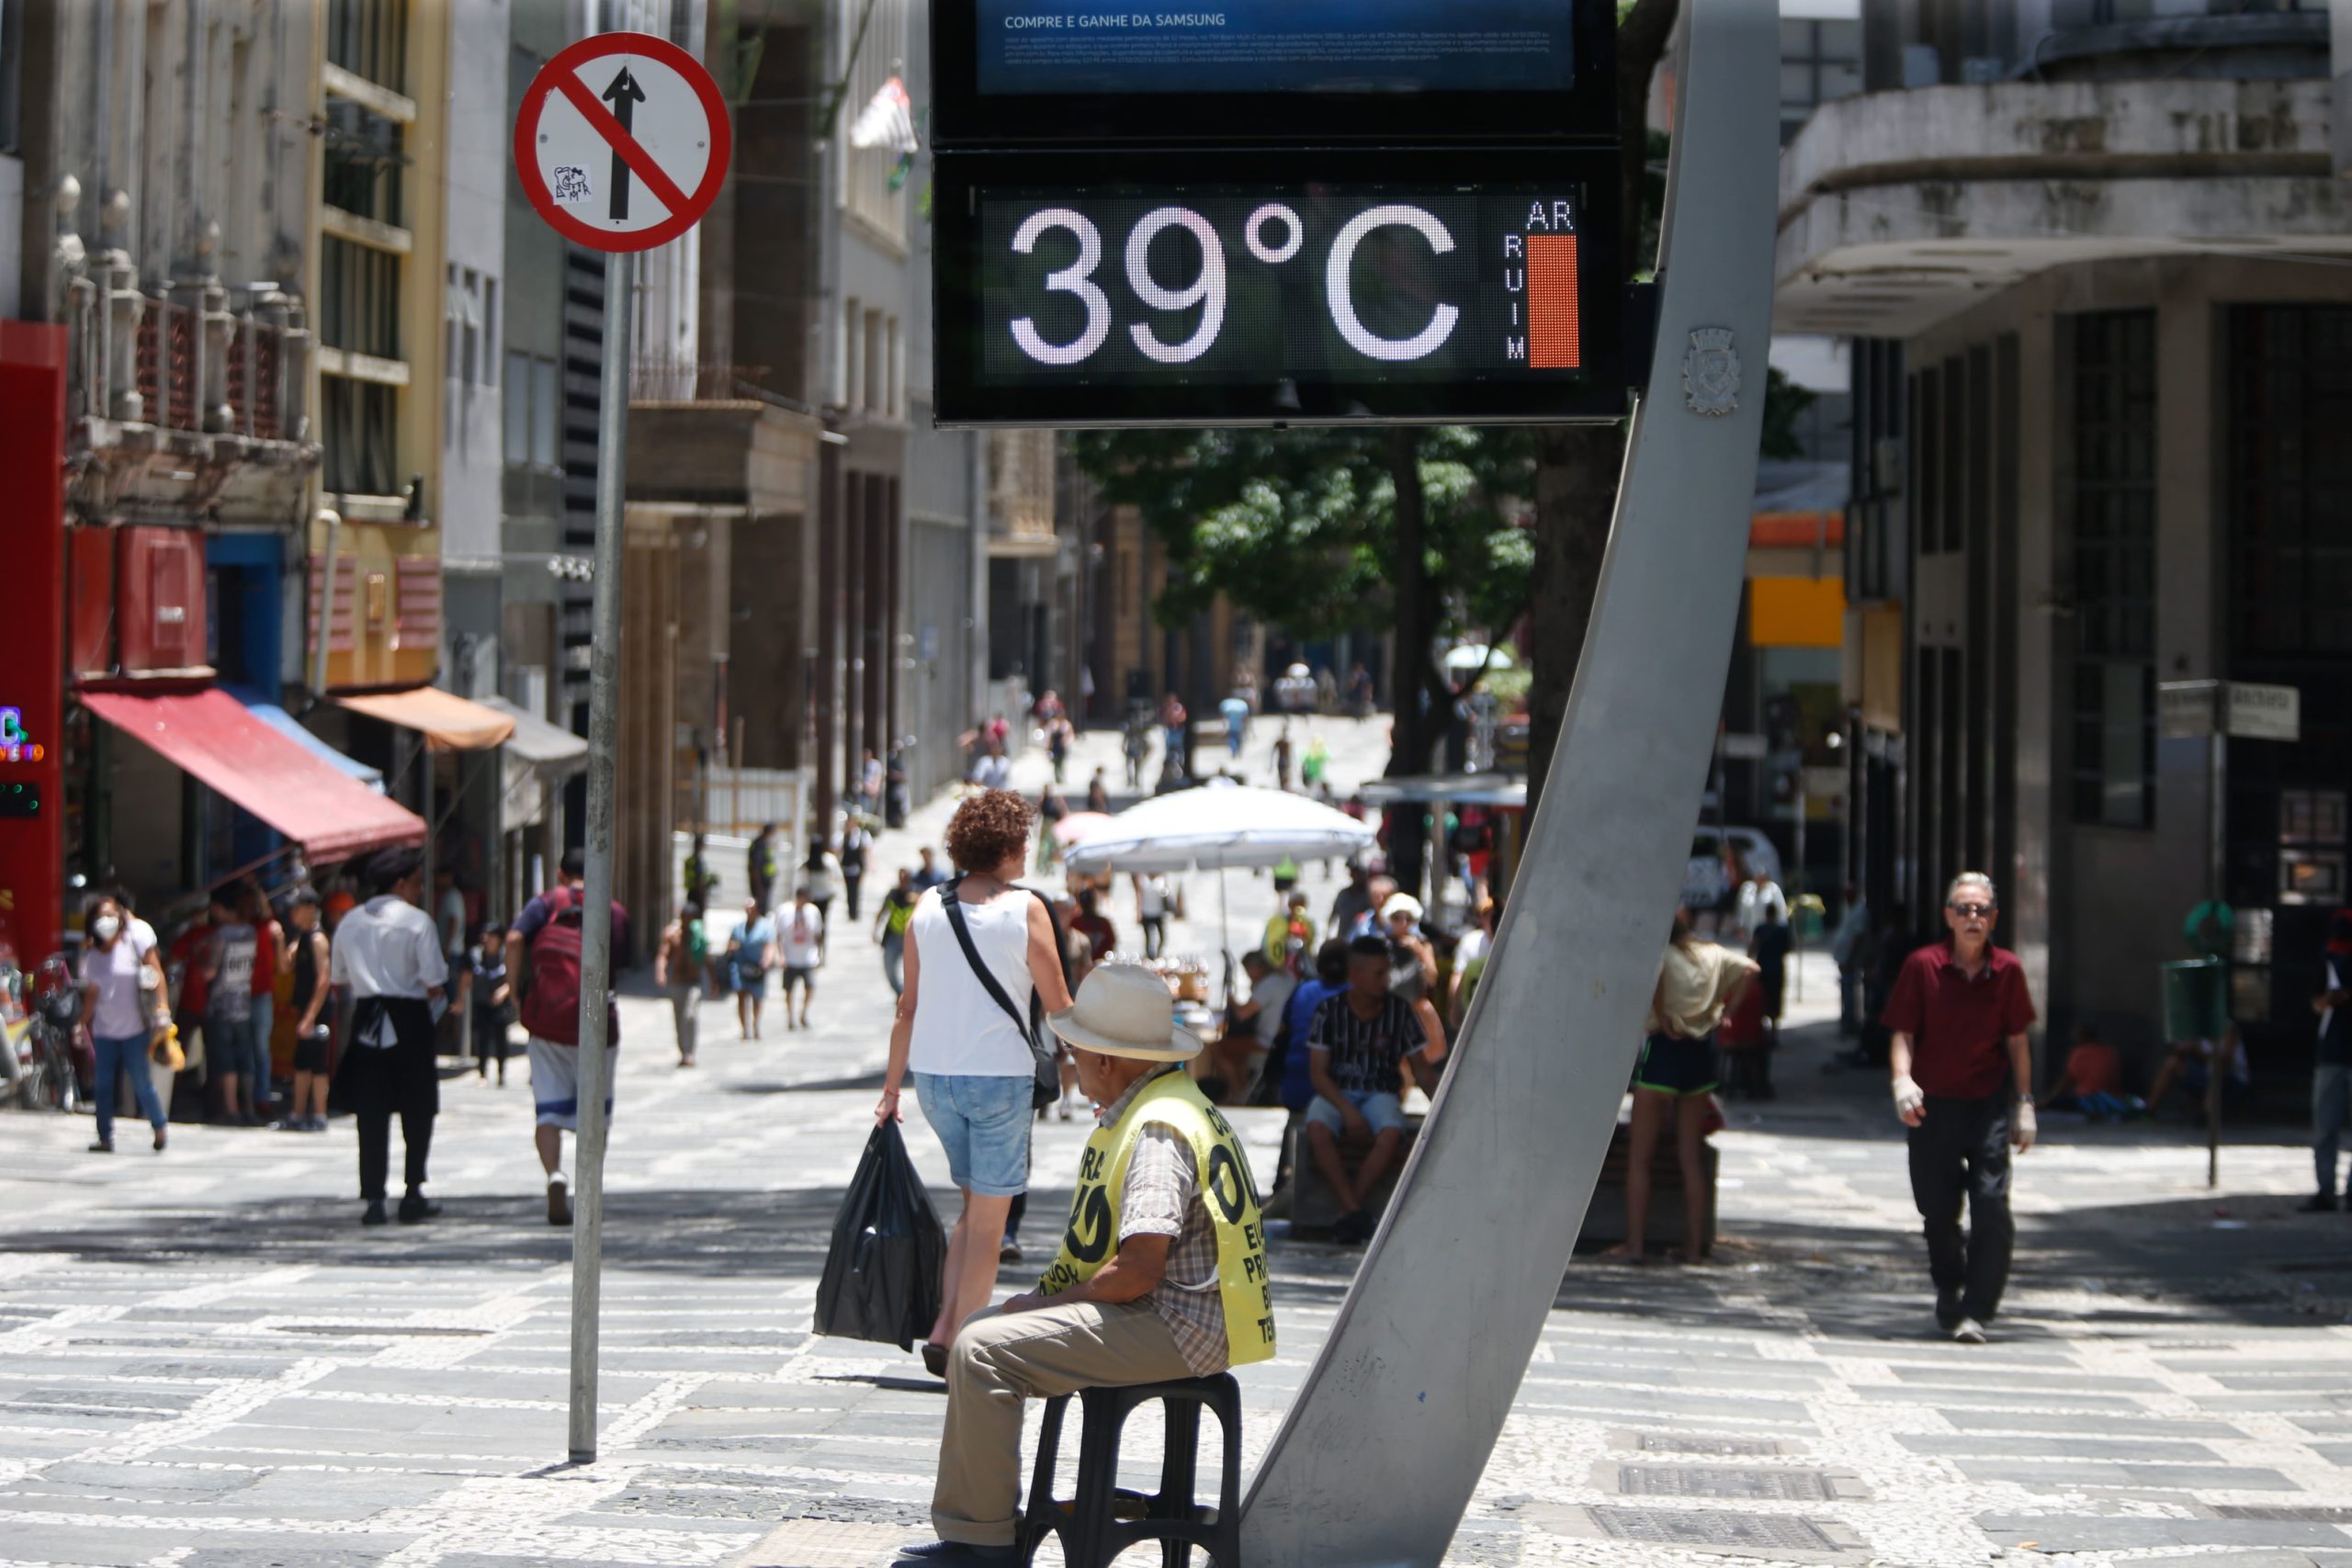 Onda de calor ficou 1°C mais quente com mudança climática mostra estudo da ClimaMeter. Na imagem: Termômetro de rua registrando 39°C na região da Praça da Sé, em São Paulo, em 12/11/2023, devido a ondas de calor, cada vez mais intensas e frequentes (Foto: Paulo Pinto/Agência Brasil)